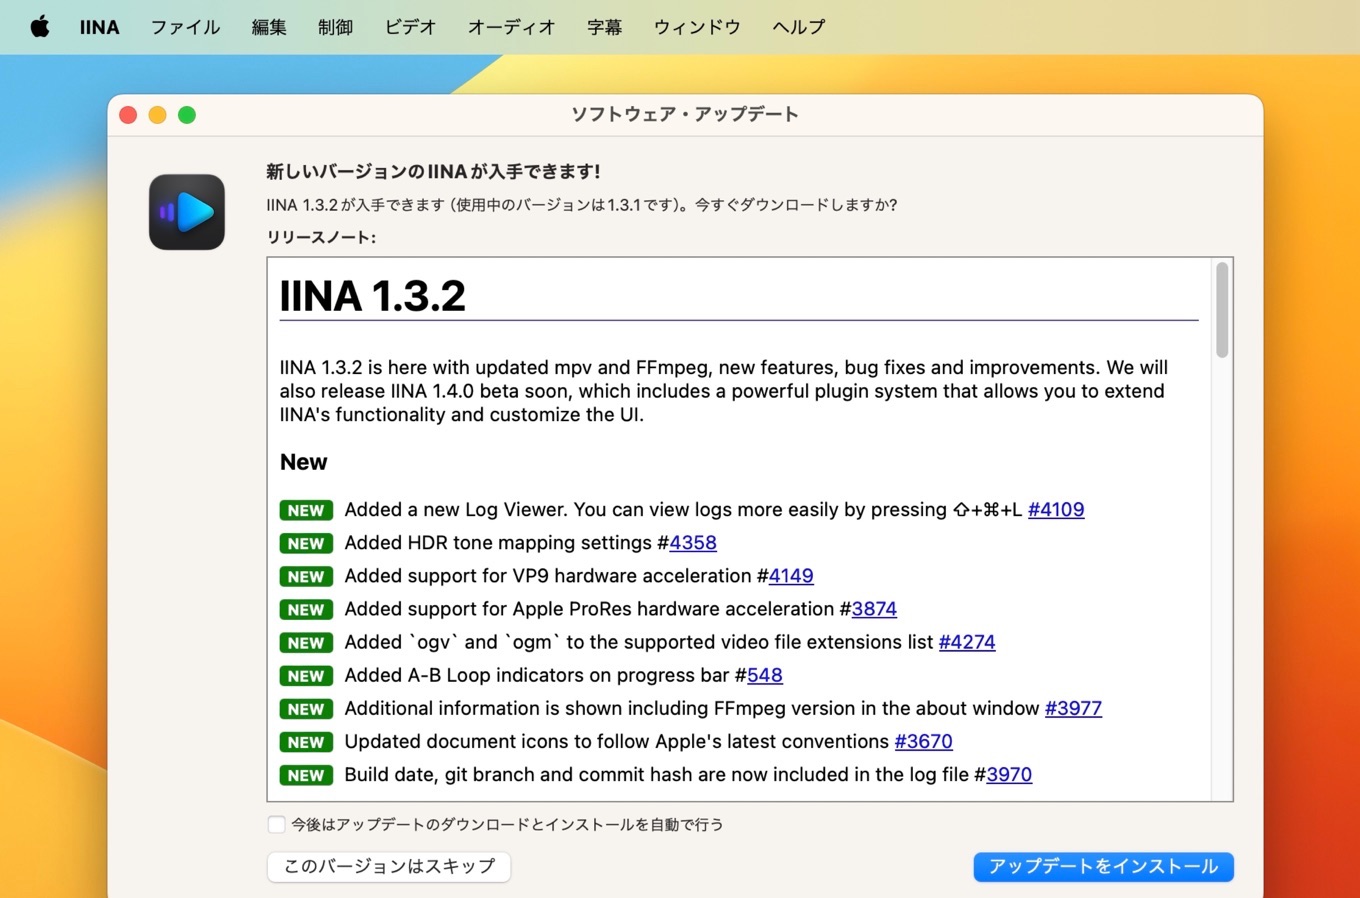 IINA v1.3.2